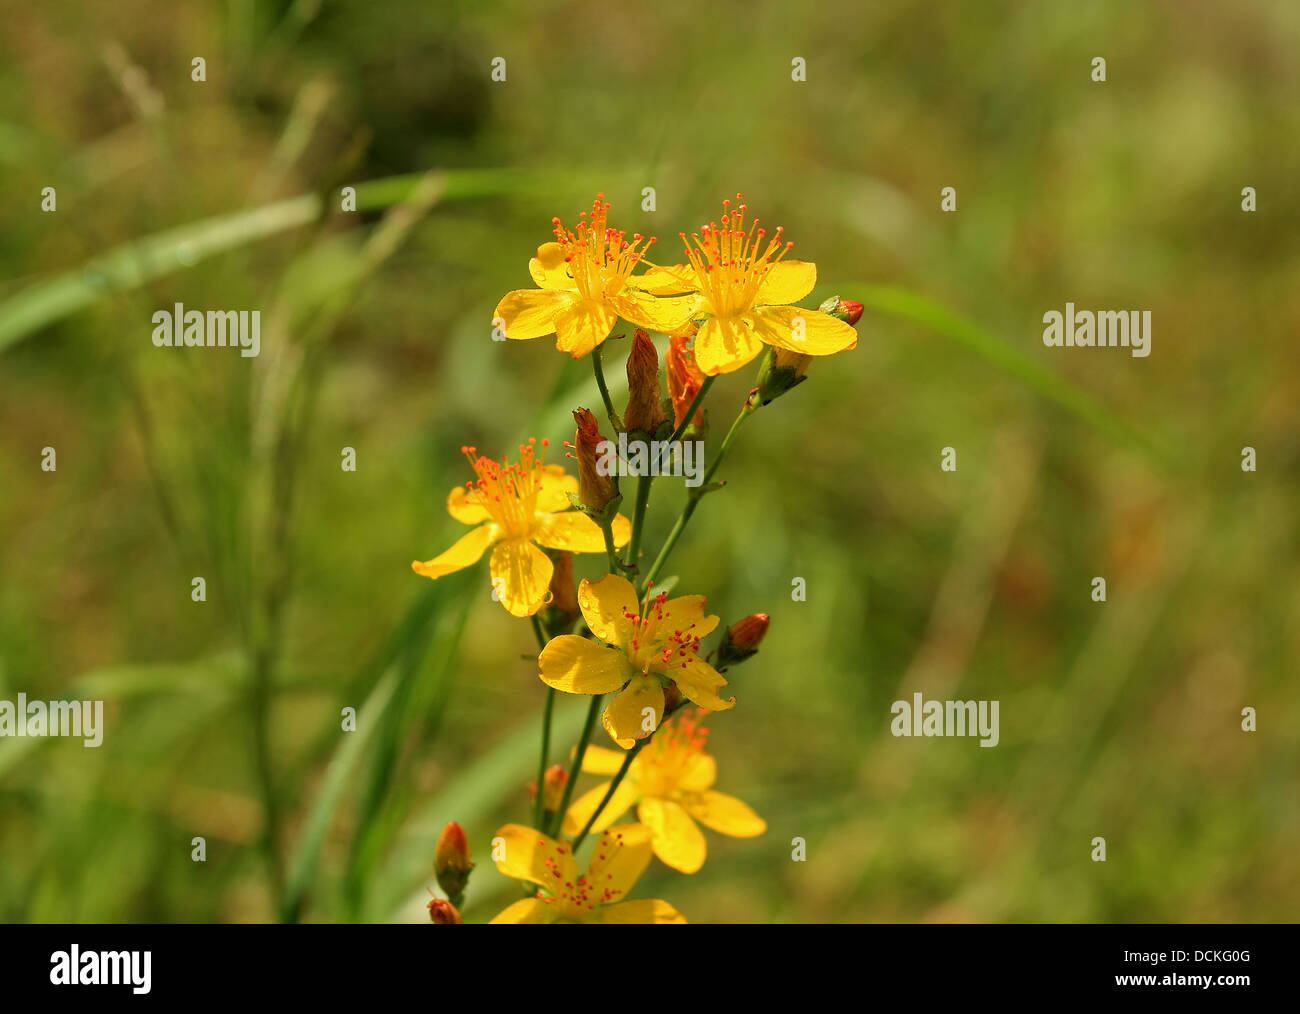 British Wild Flower Saint John's Wort Stock Photo